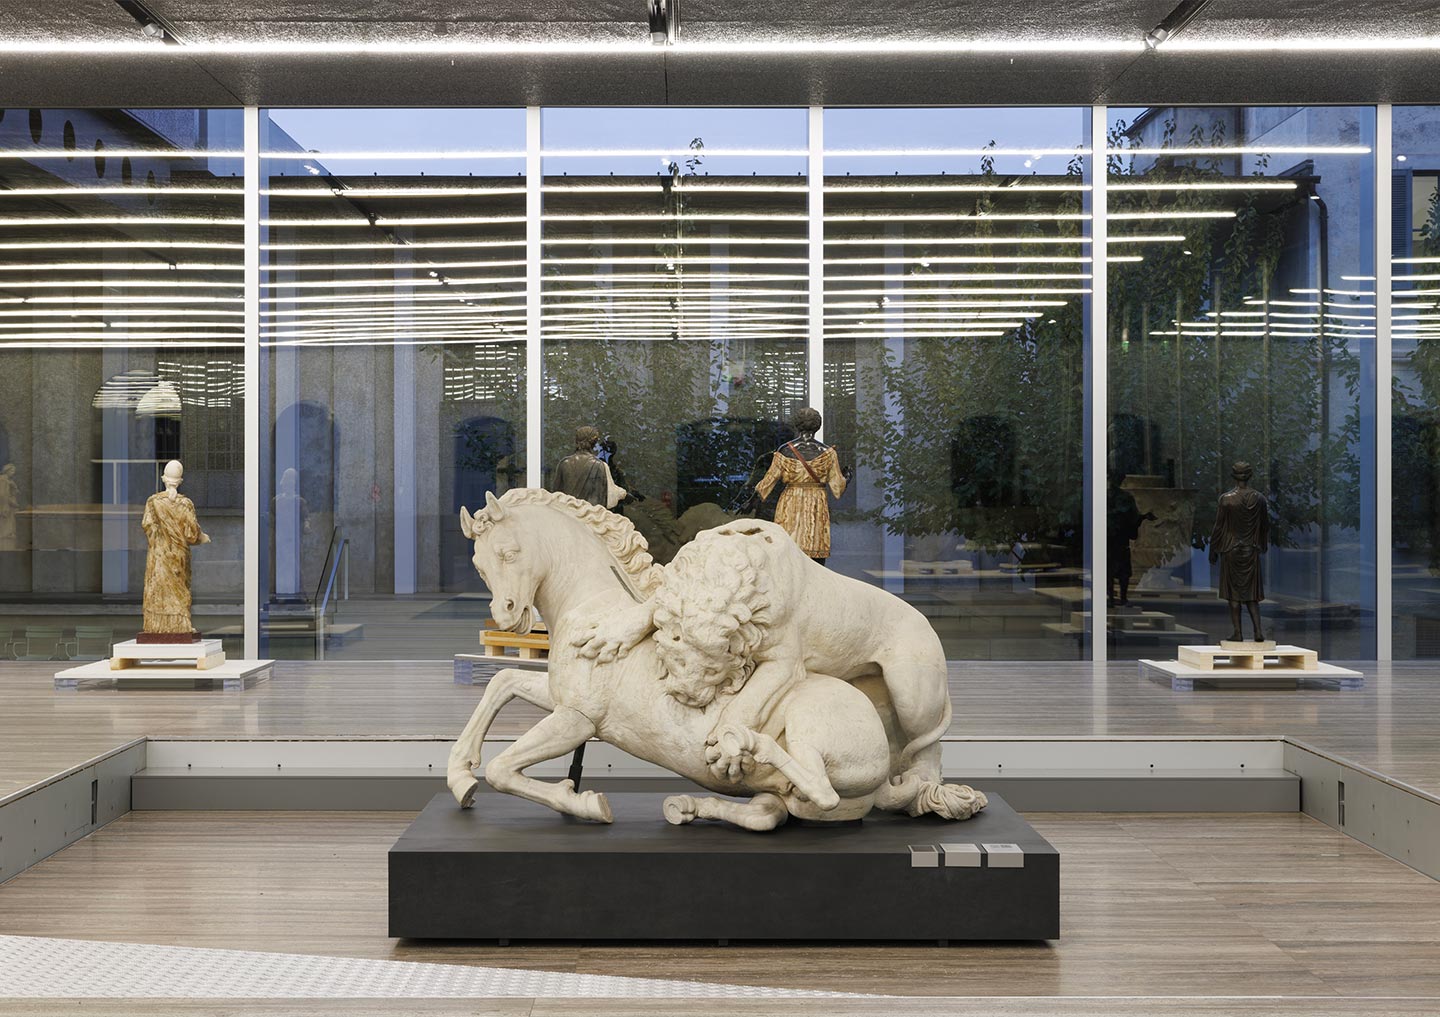 Lion attacking a horse, 4th century BCE, Rome, Musei Capitolini, Palazzo dei Conservatori